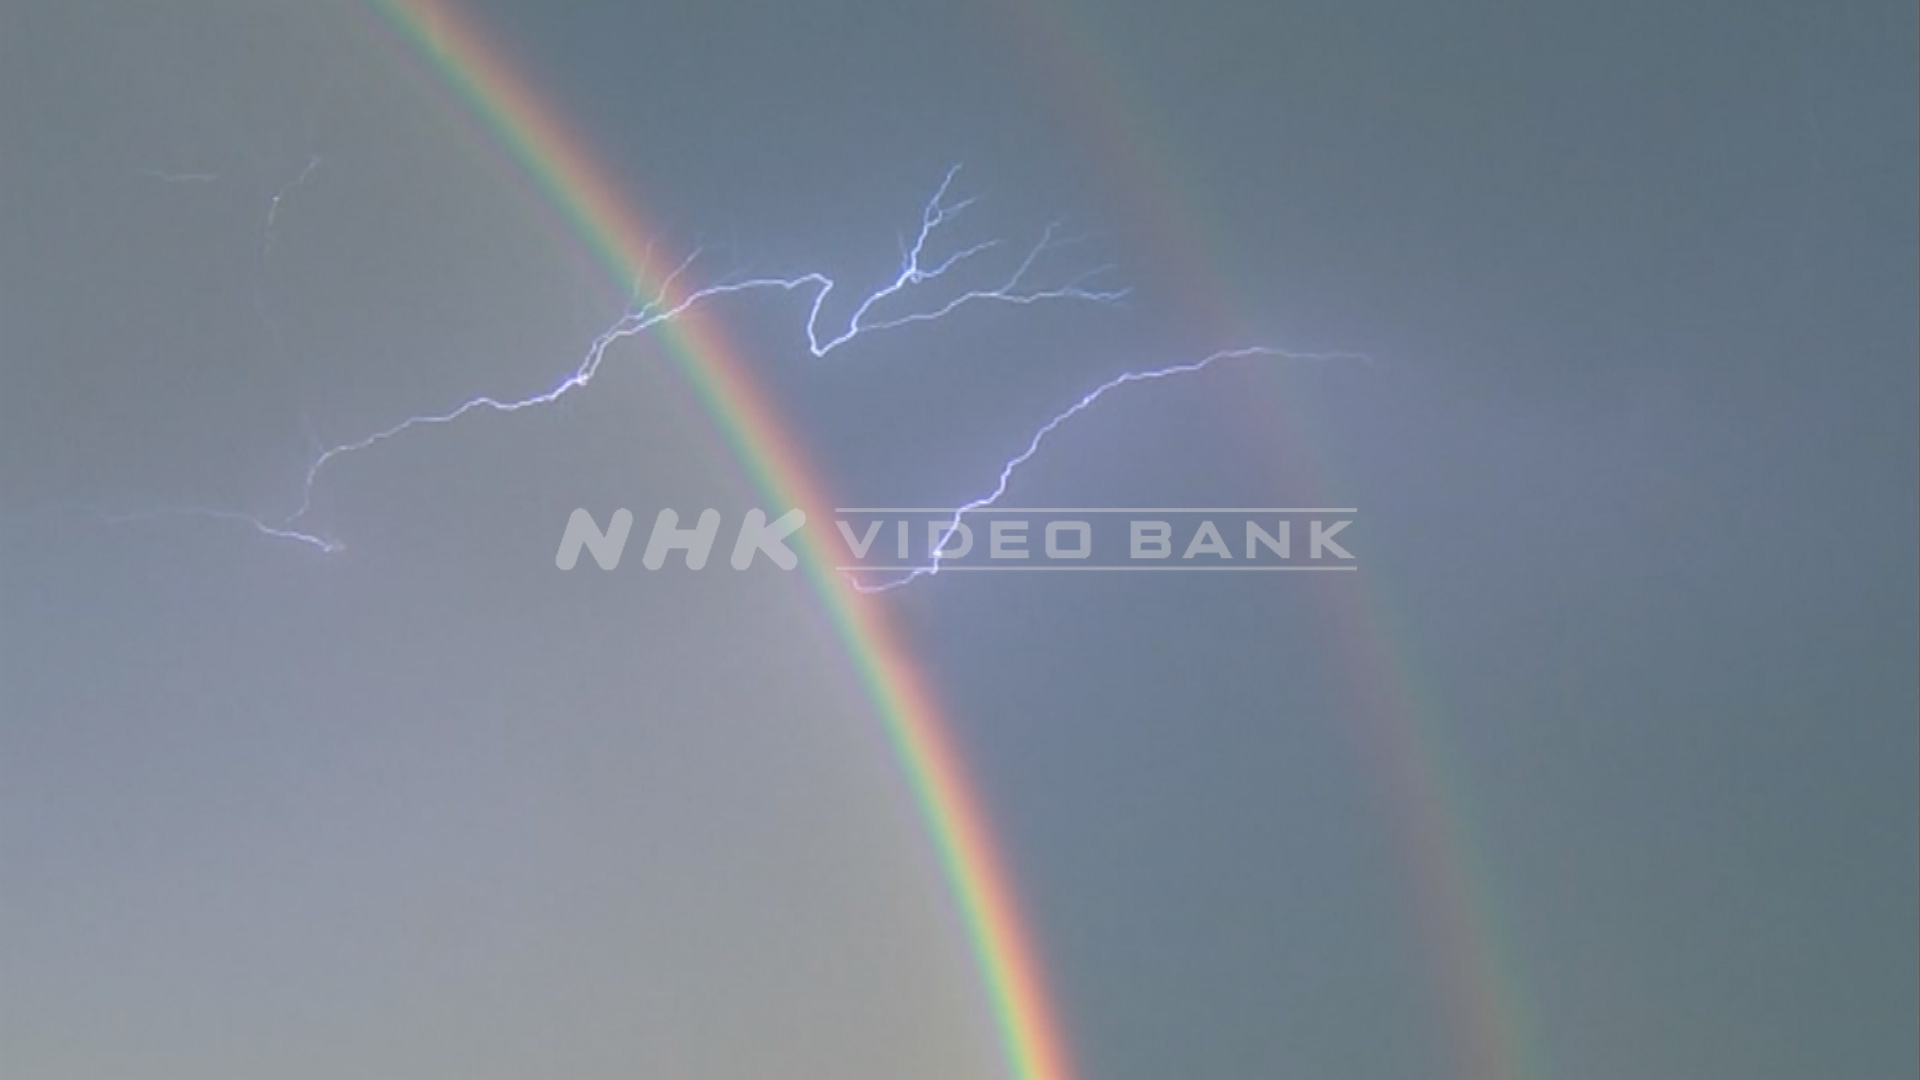 Flash of lightning and rainbow